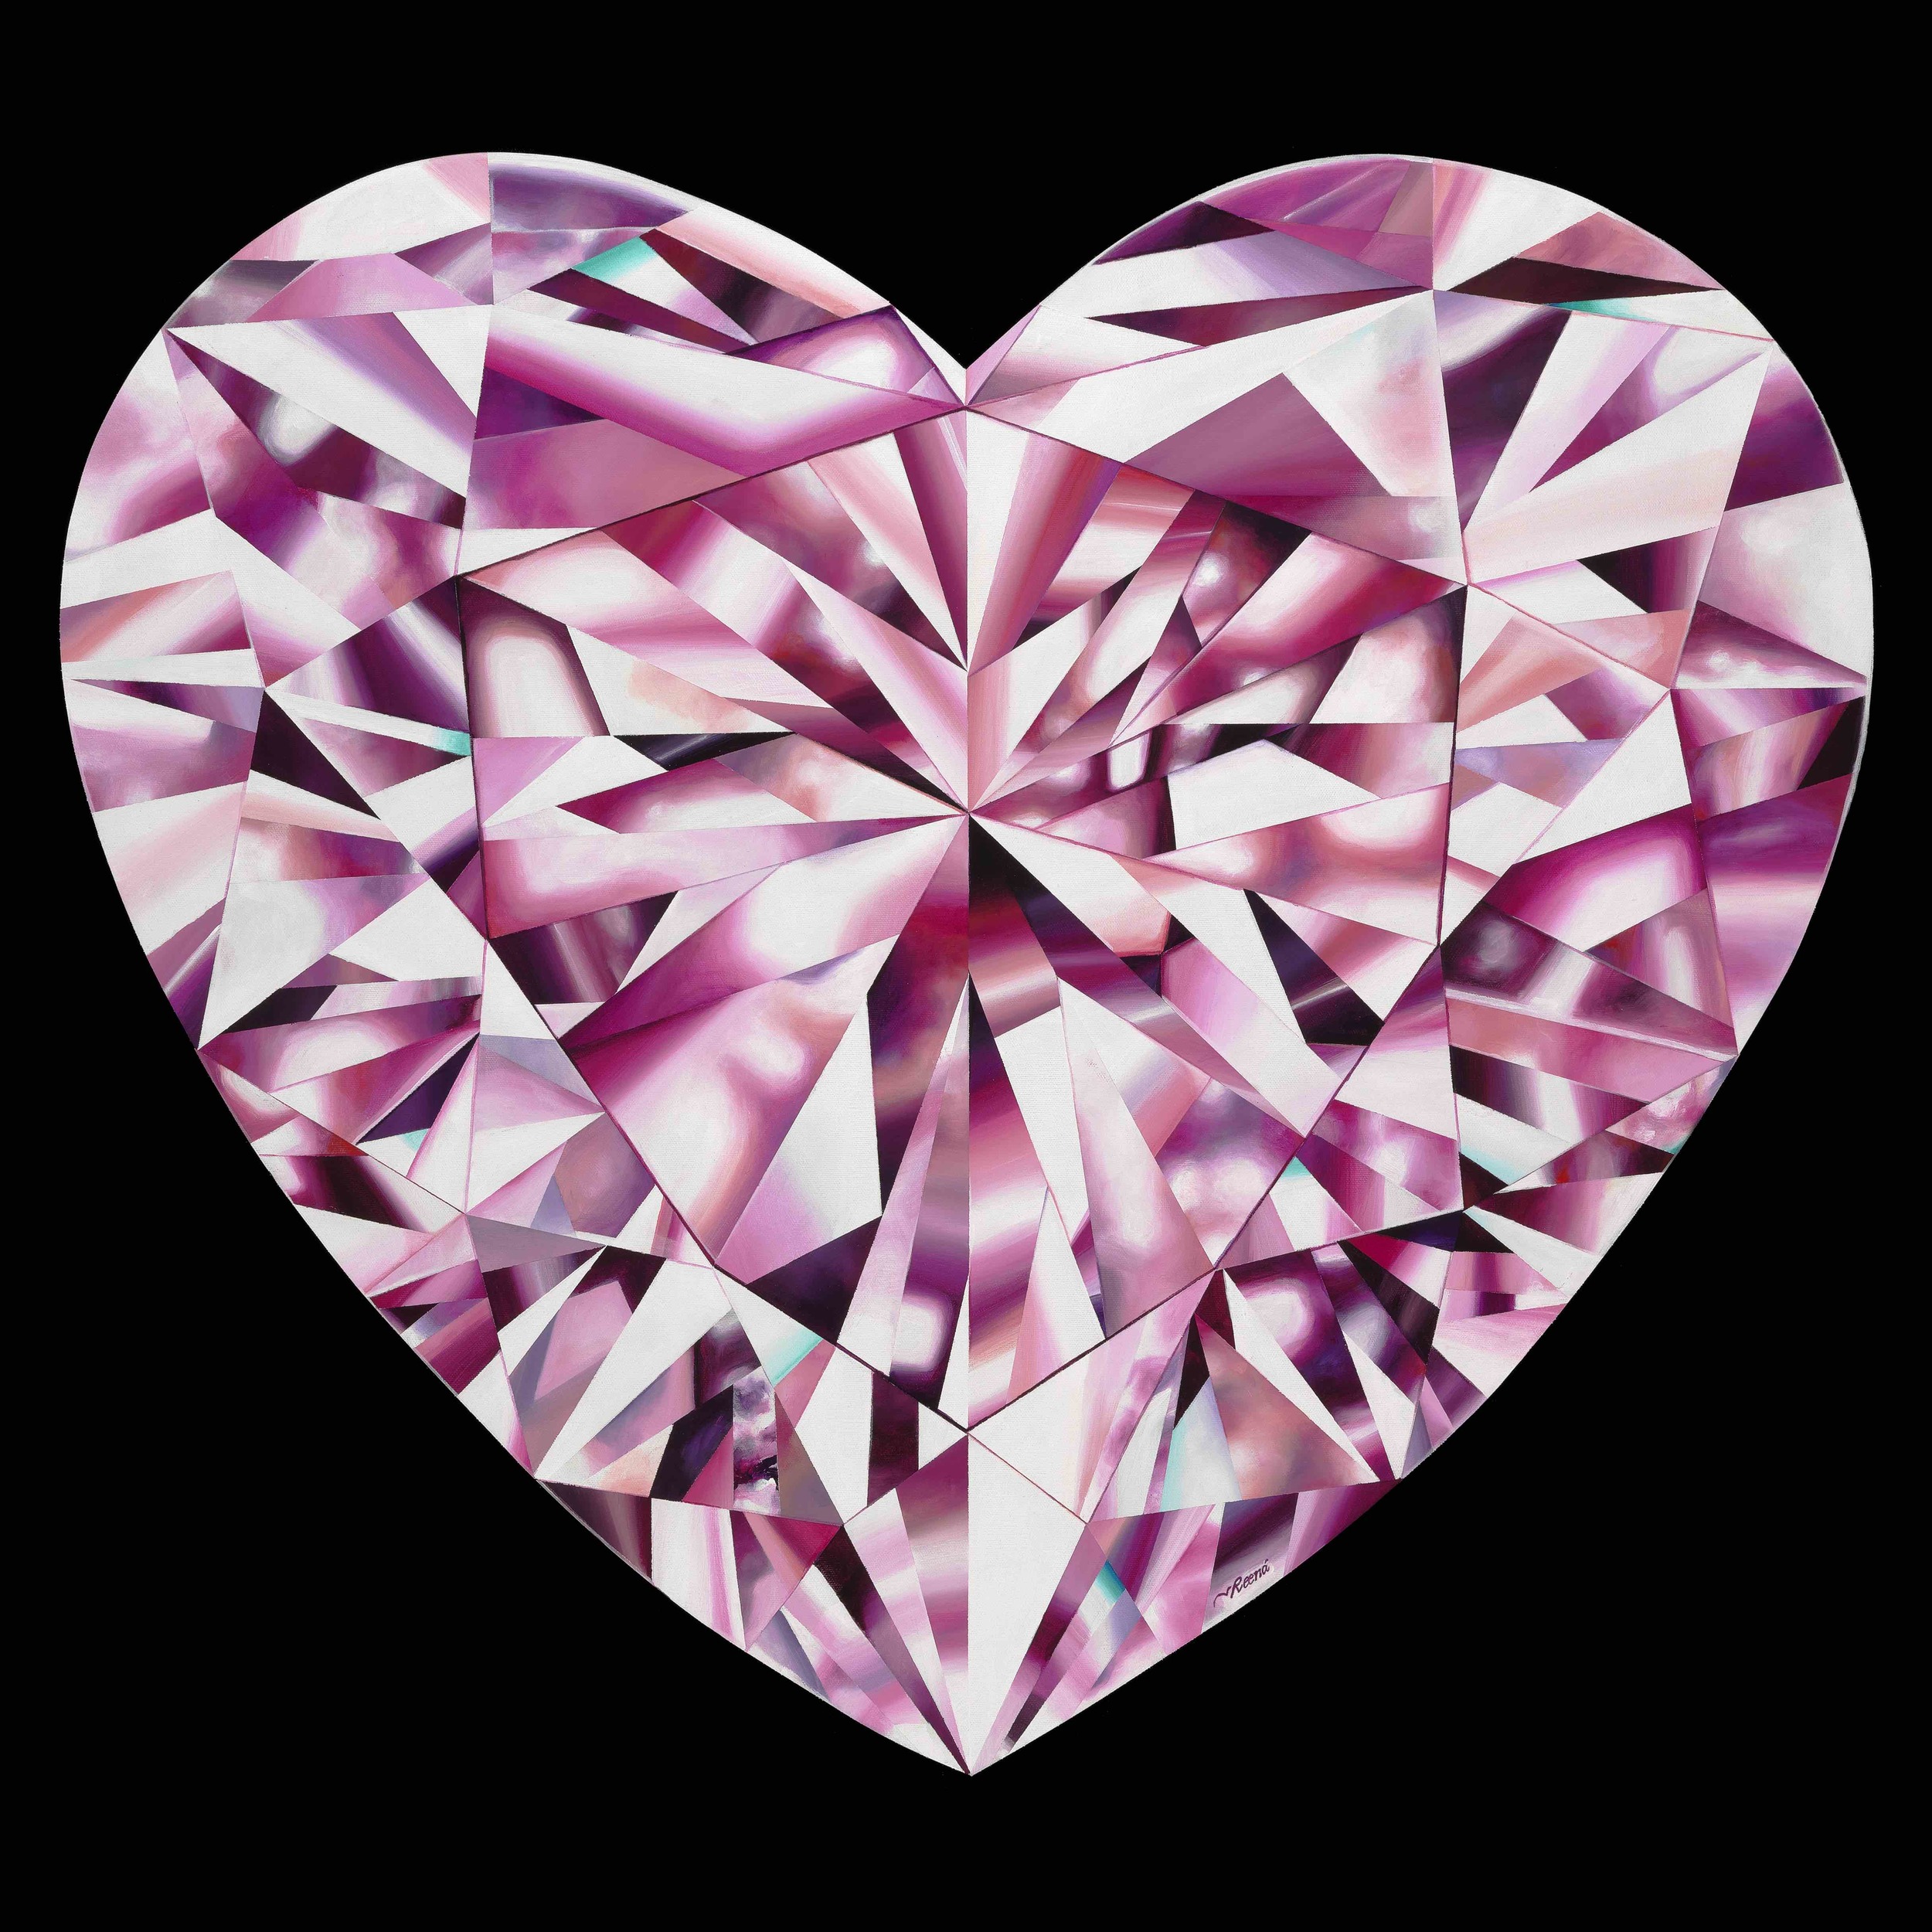 Passionate Heart - A Pink Heart-Shaped Diamond Painting By Reena Ahluwalia  — REENA AHLUWALIA